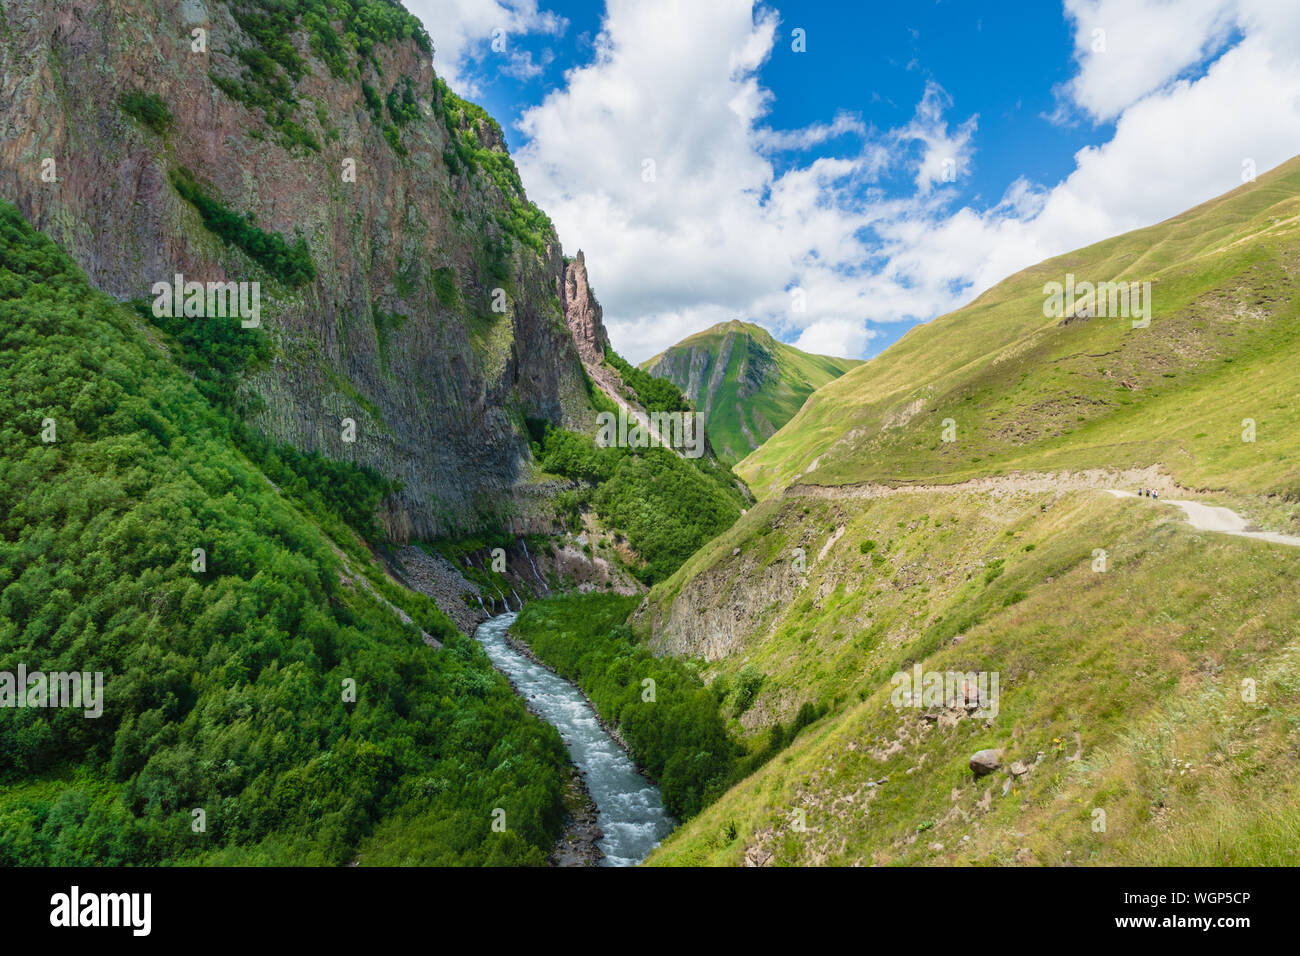 Truso Valley et de la Gorge de salon paysage sur le trekking / randonnée à pied, à Kazbegi, Géorgie. Truso Valley est une route de trekking panoramique Banque D'Images